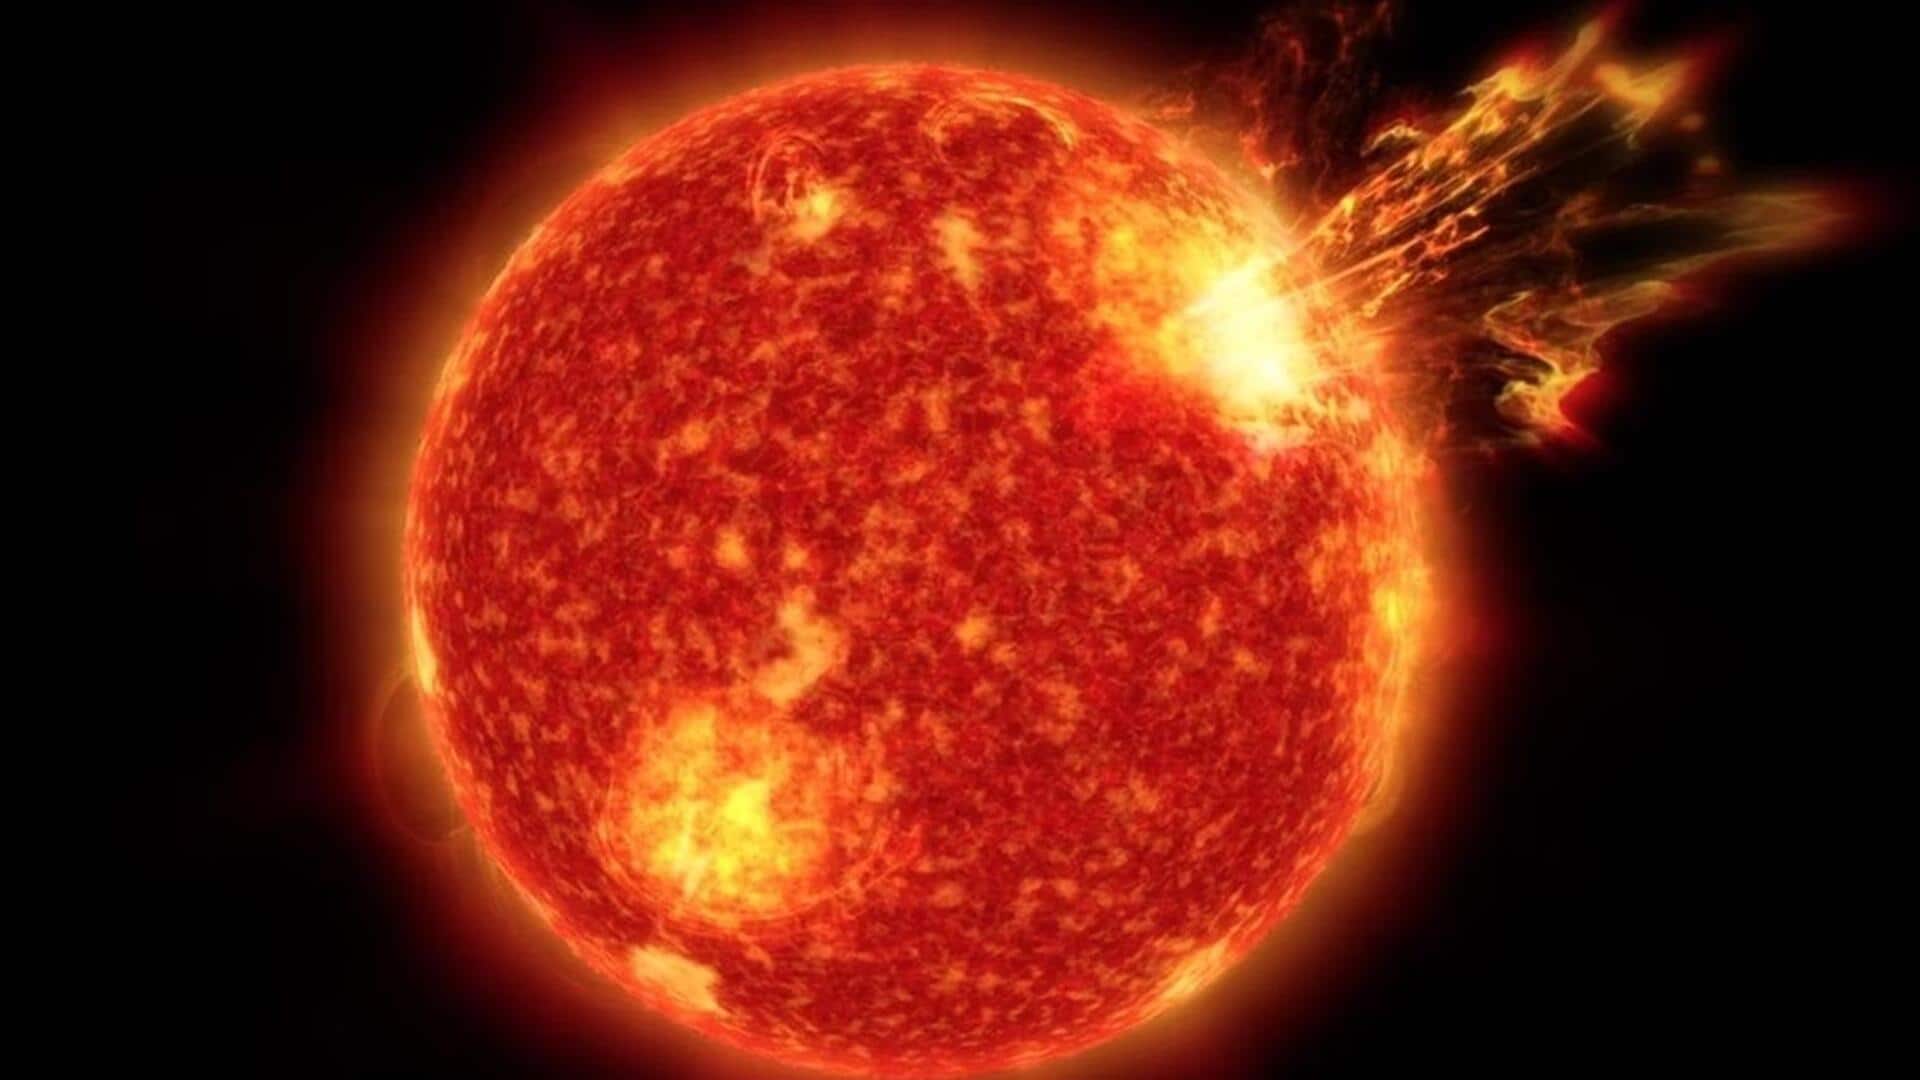 पृथ्वी की तरफ मौजूद सनस्पॉट में हो सकता है विस्फोट, सोलर फ्लेयर निकलने की है आशंका